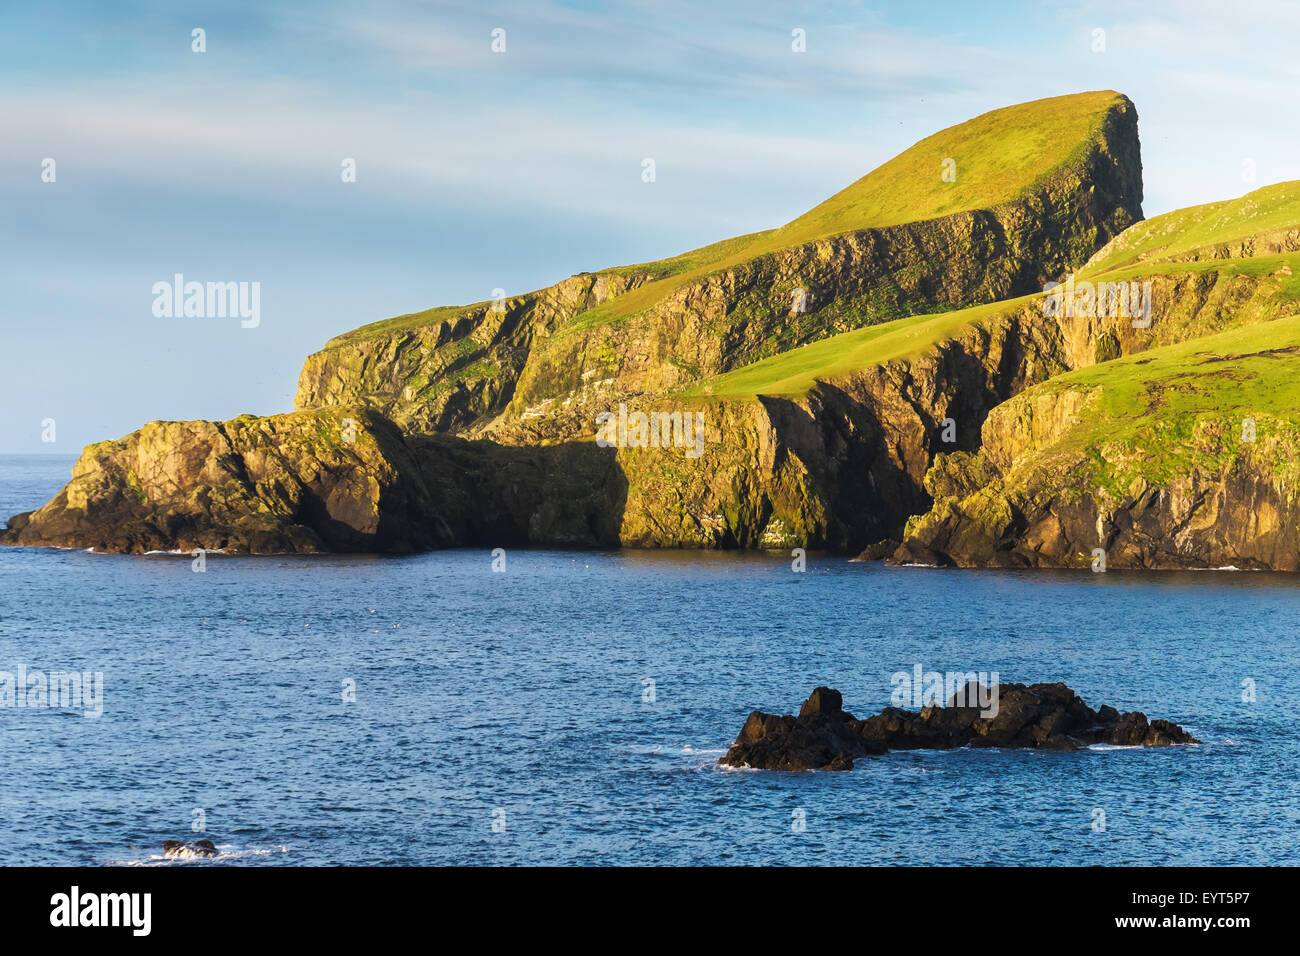 Une image de moutons rock en Fair Isle, une île dans l'océan Atlantique entre l'Orkney et Shetland Banque D'Images